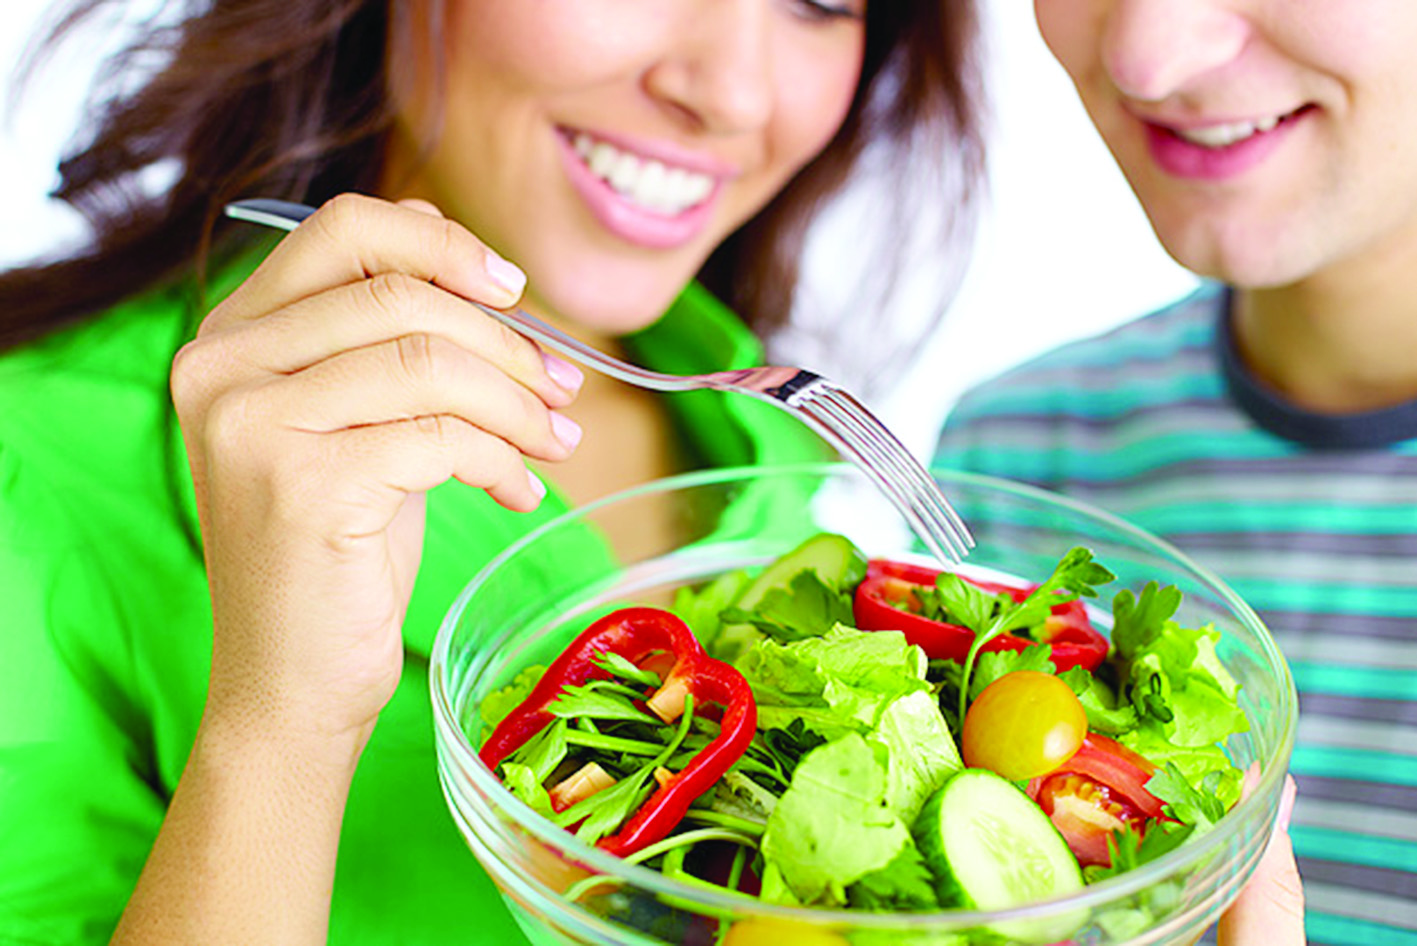 النظام الغذائي النباتي يقي من أمراض القلب والأوعية الدموية والسكري